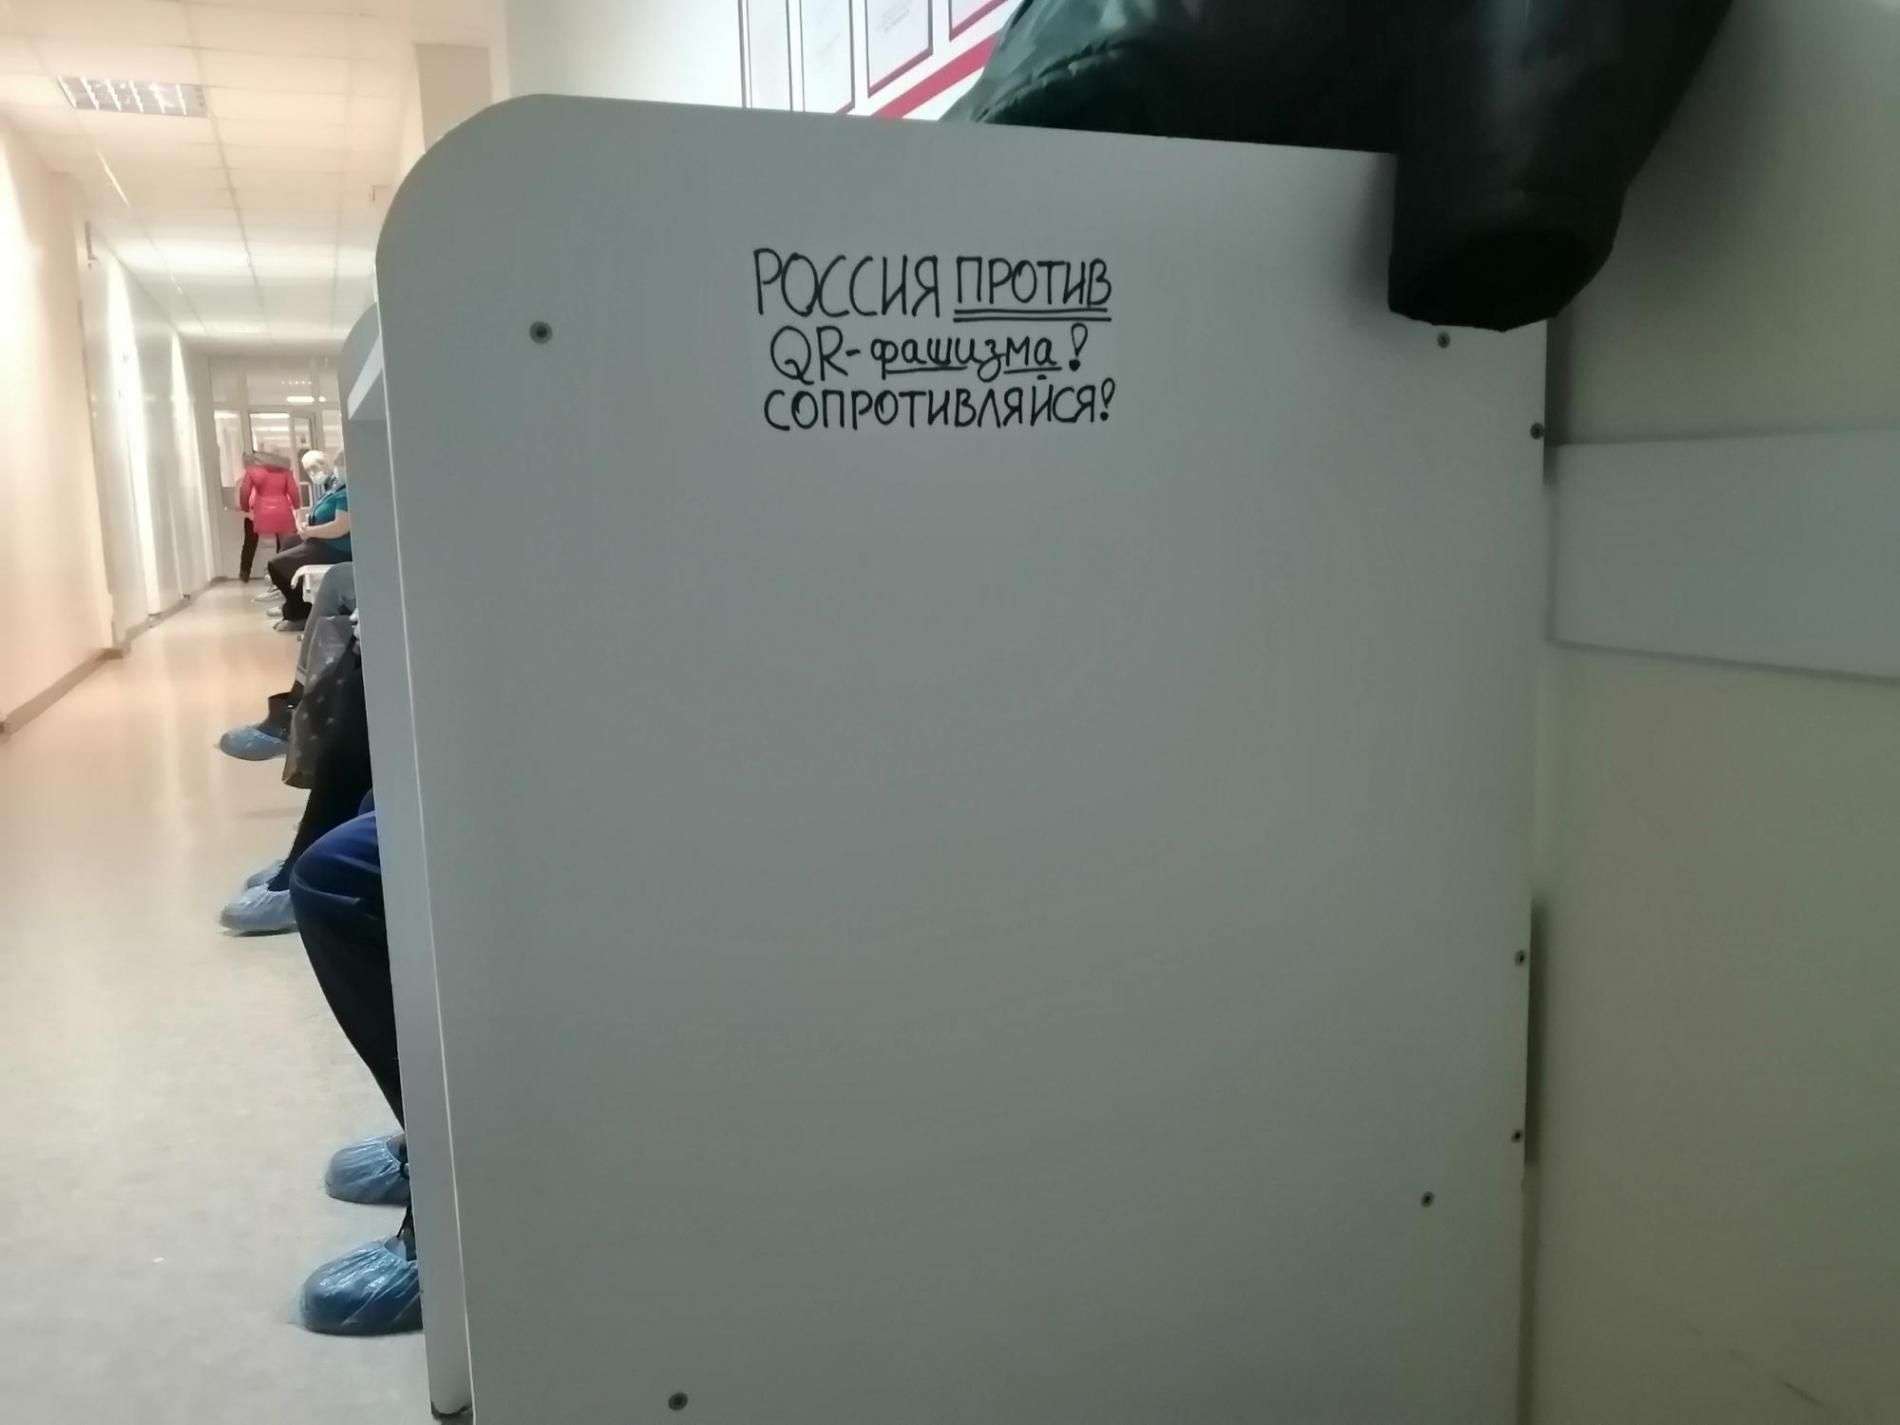 Наклейки «против QR-фашизма» появились в поликлинике Бердска